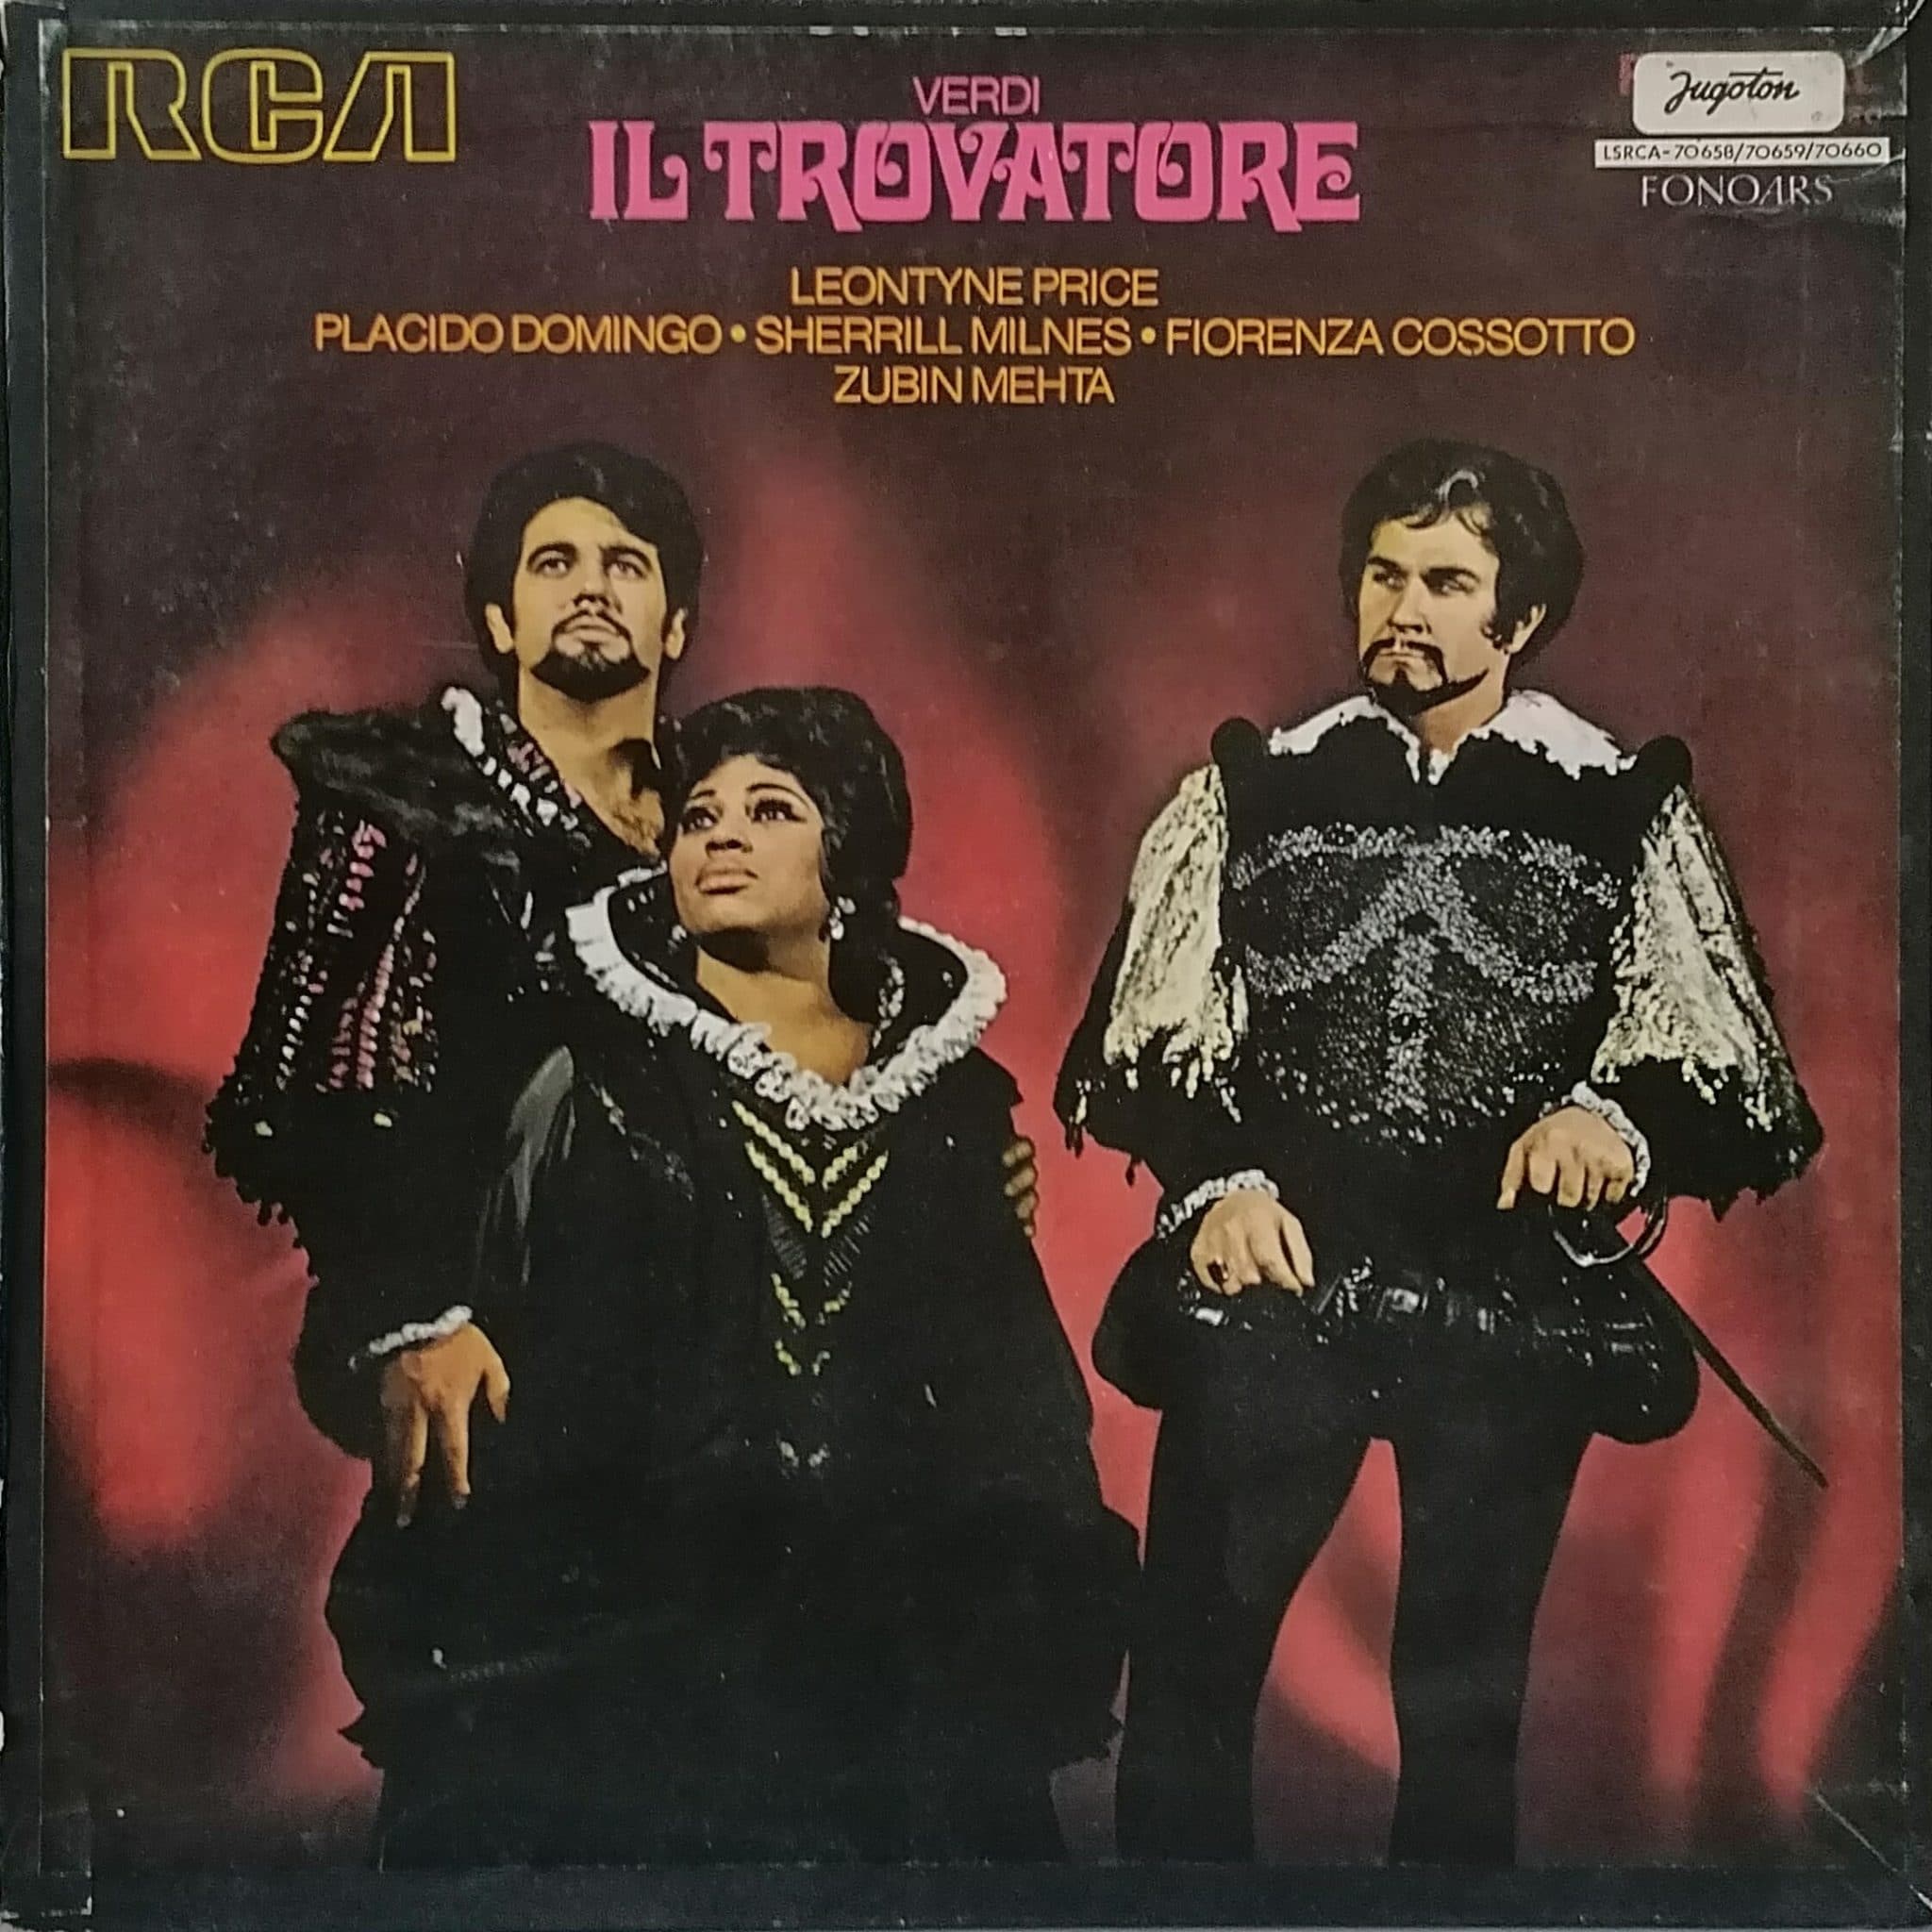 Gramofonska ploča Il Trovatore Giuseppe Verdi / Leontyne Price / Placido Domingo / Sherrill Milnes / Fiorenza Cossotto / Zubin Mehta  LSRCA-70658-60